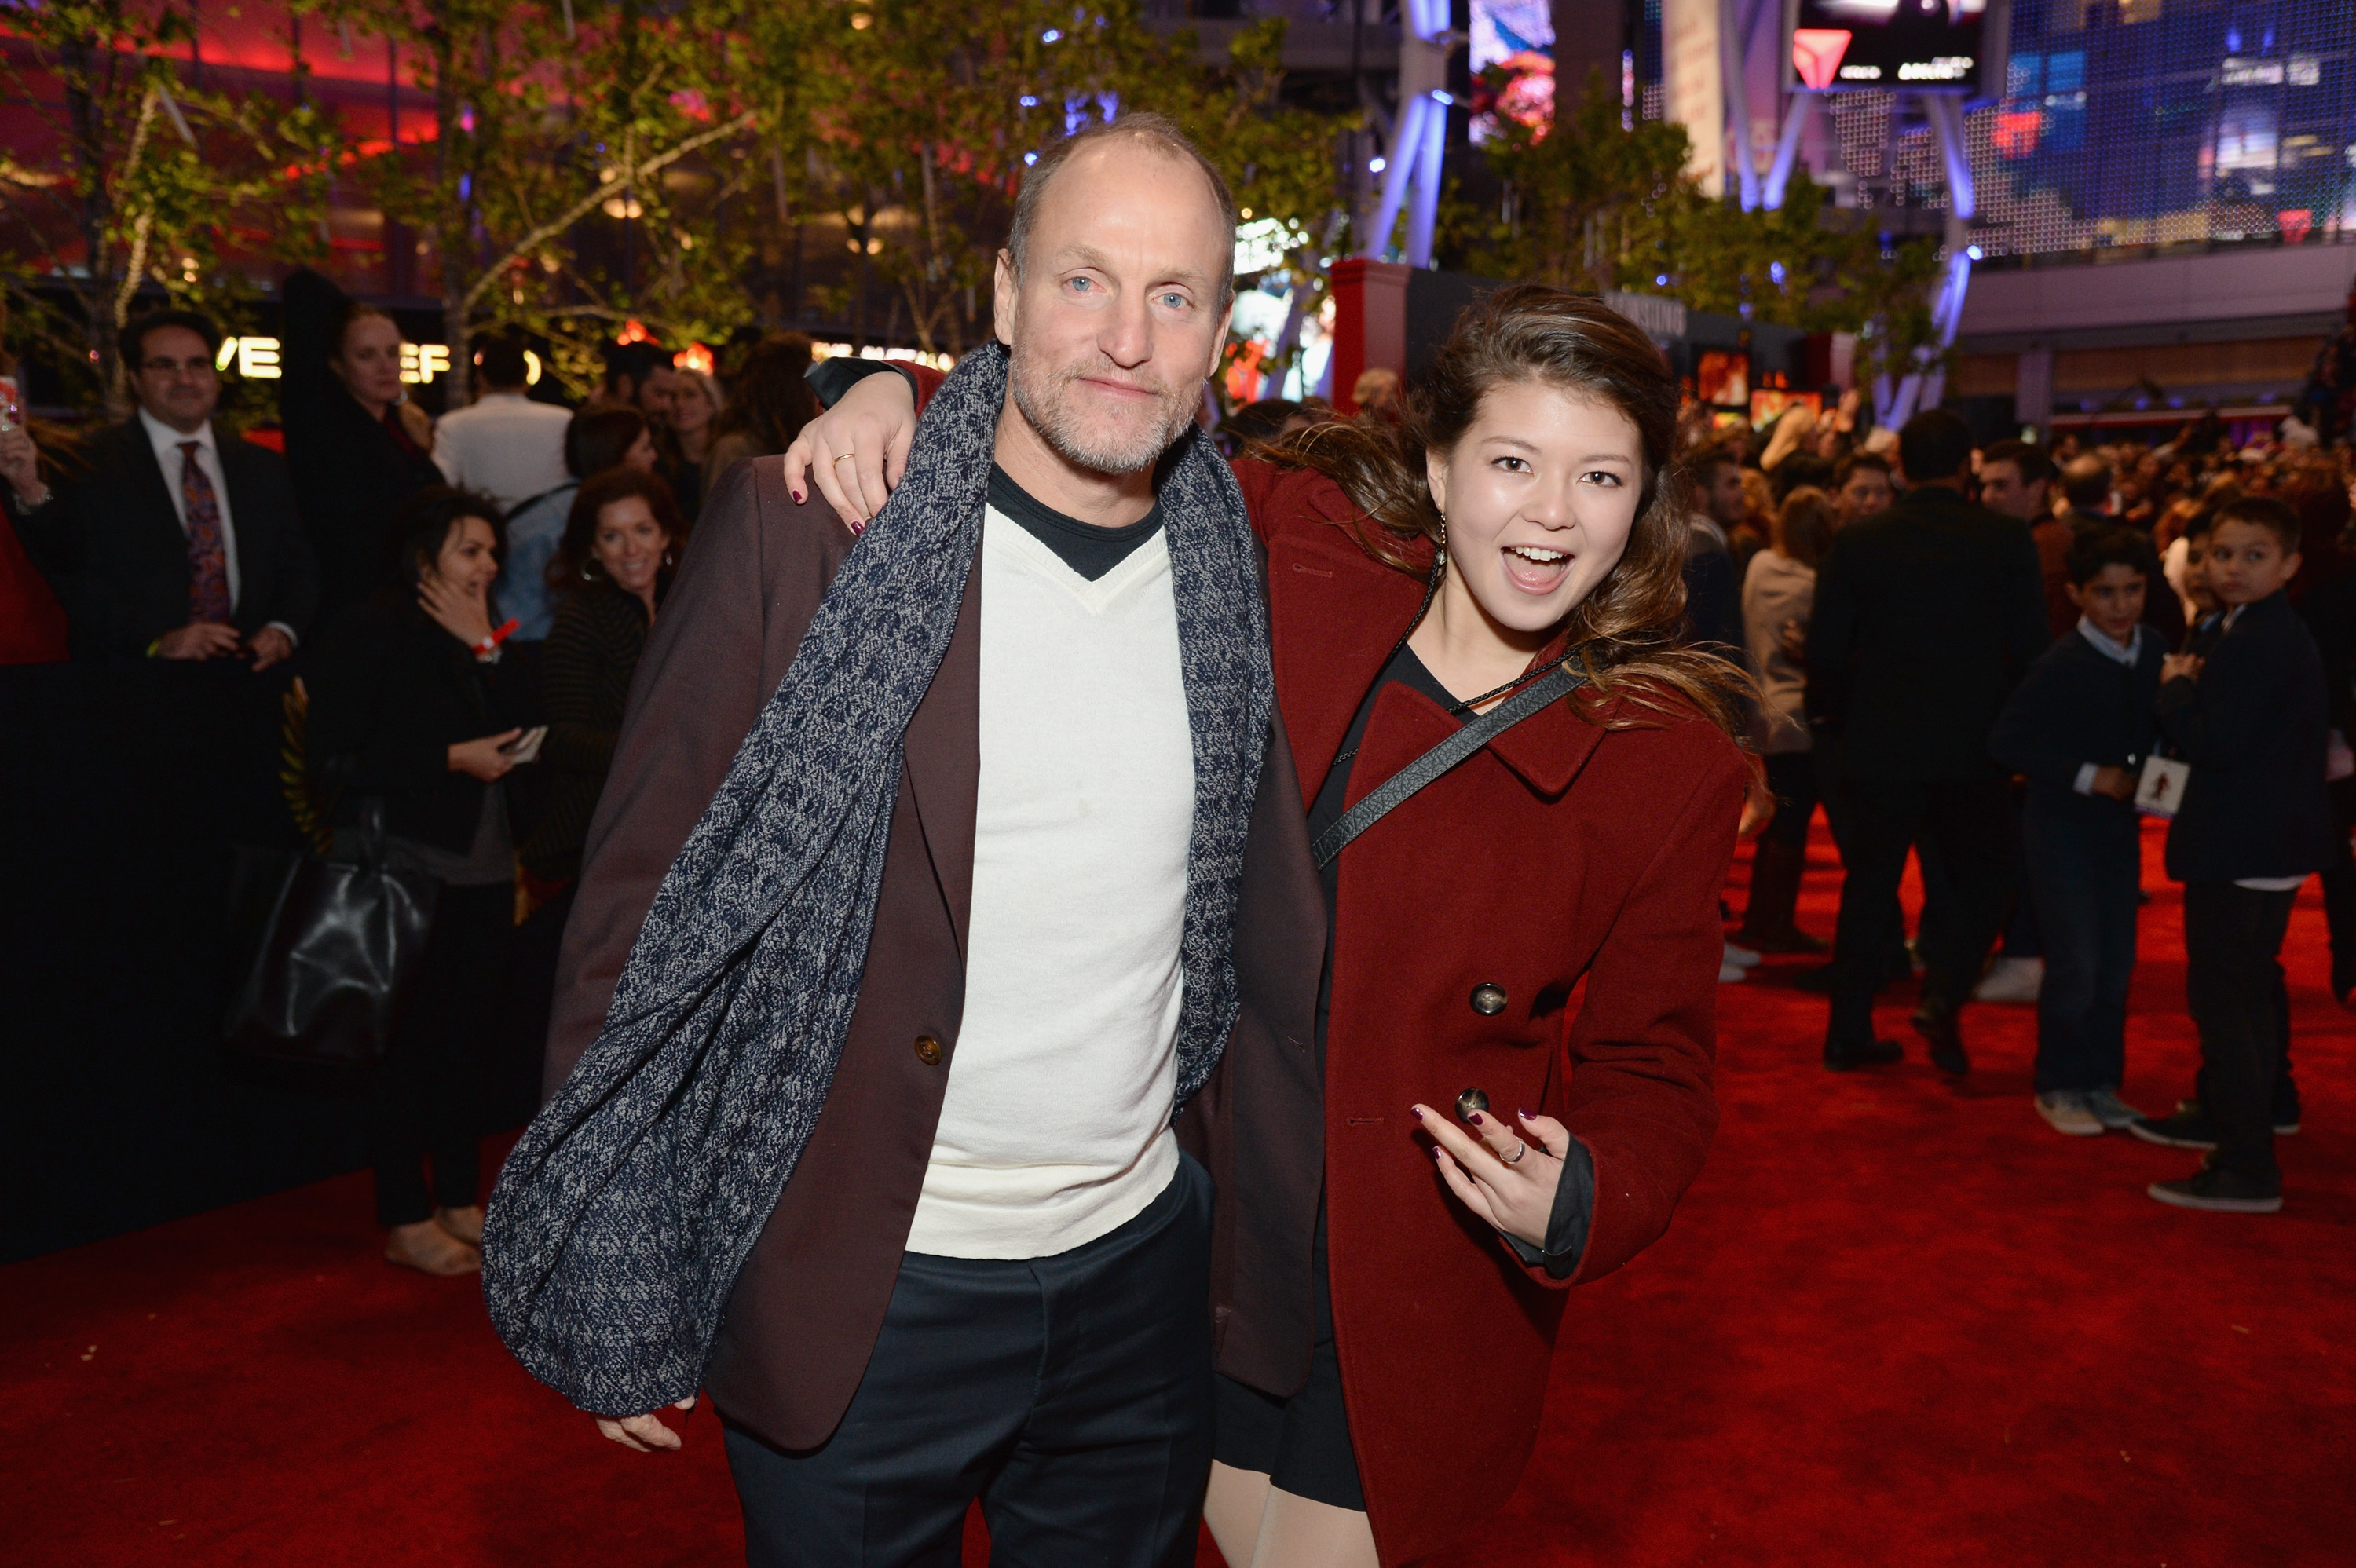 Woody Harrelson und seine Tochter Zoe Harrelson besuchen die "Hunger Games: Mockingjay Part 2" Premiere in Los Angeles, gesponsert von Chrysler, am 16. November 2015 in Los Angeles, Kalifornien. | Quelle: Getty Images